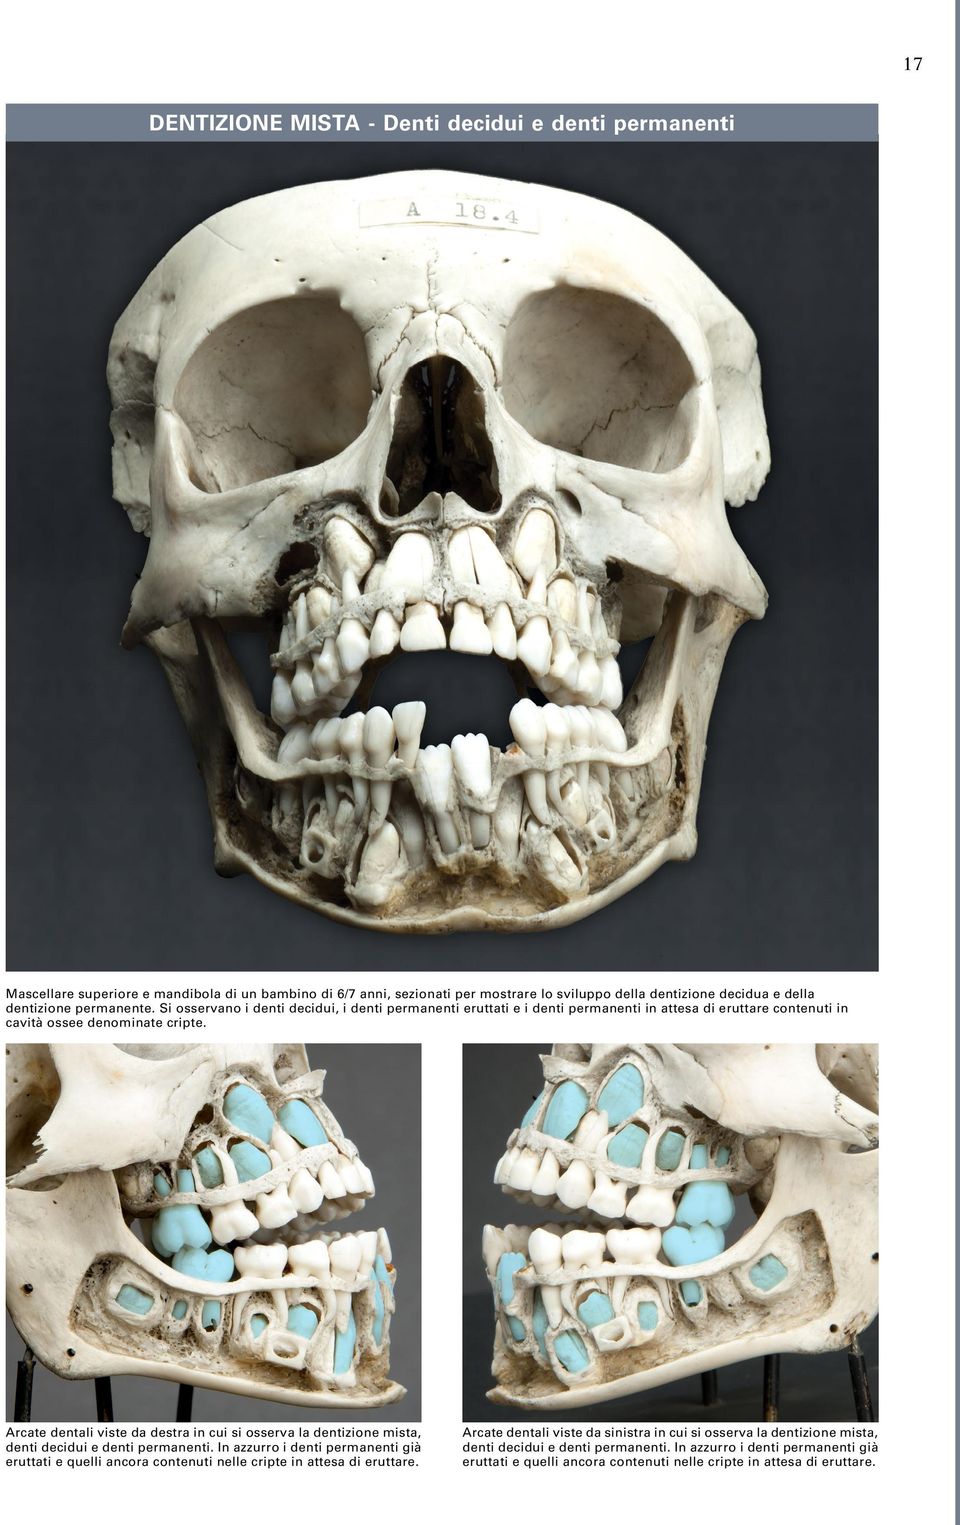 Arcate dentali viste da destra in cui si osserva la dentizione mista, denti decidui e denti permanenti.